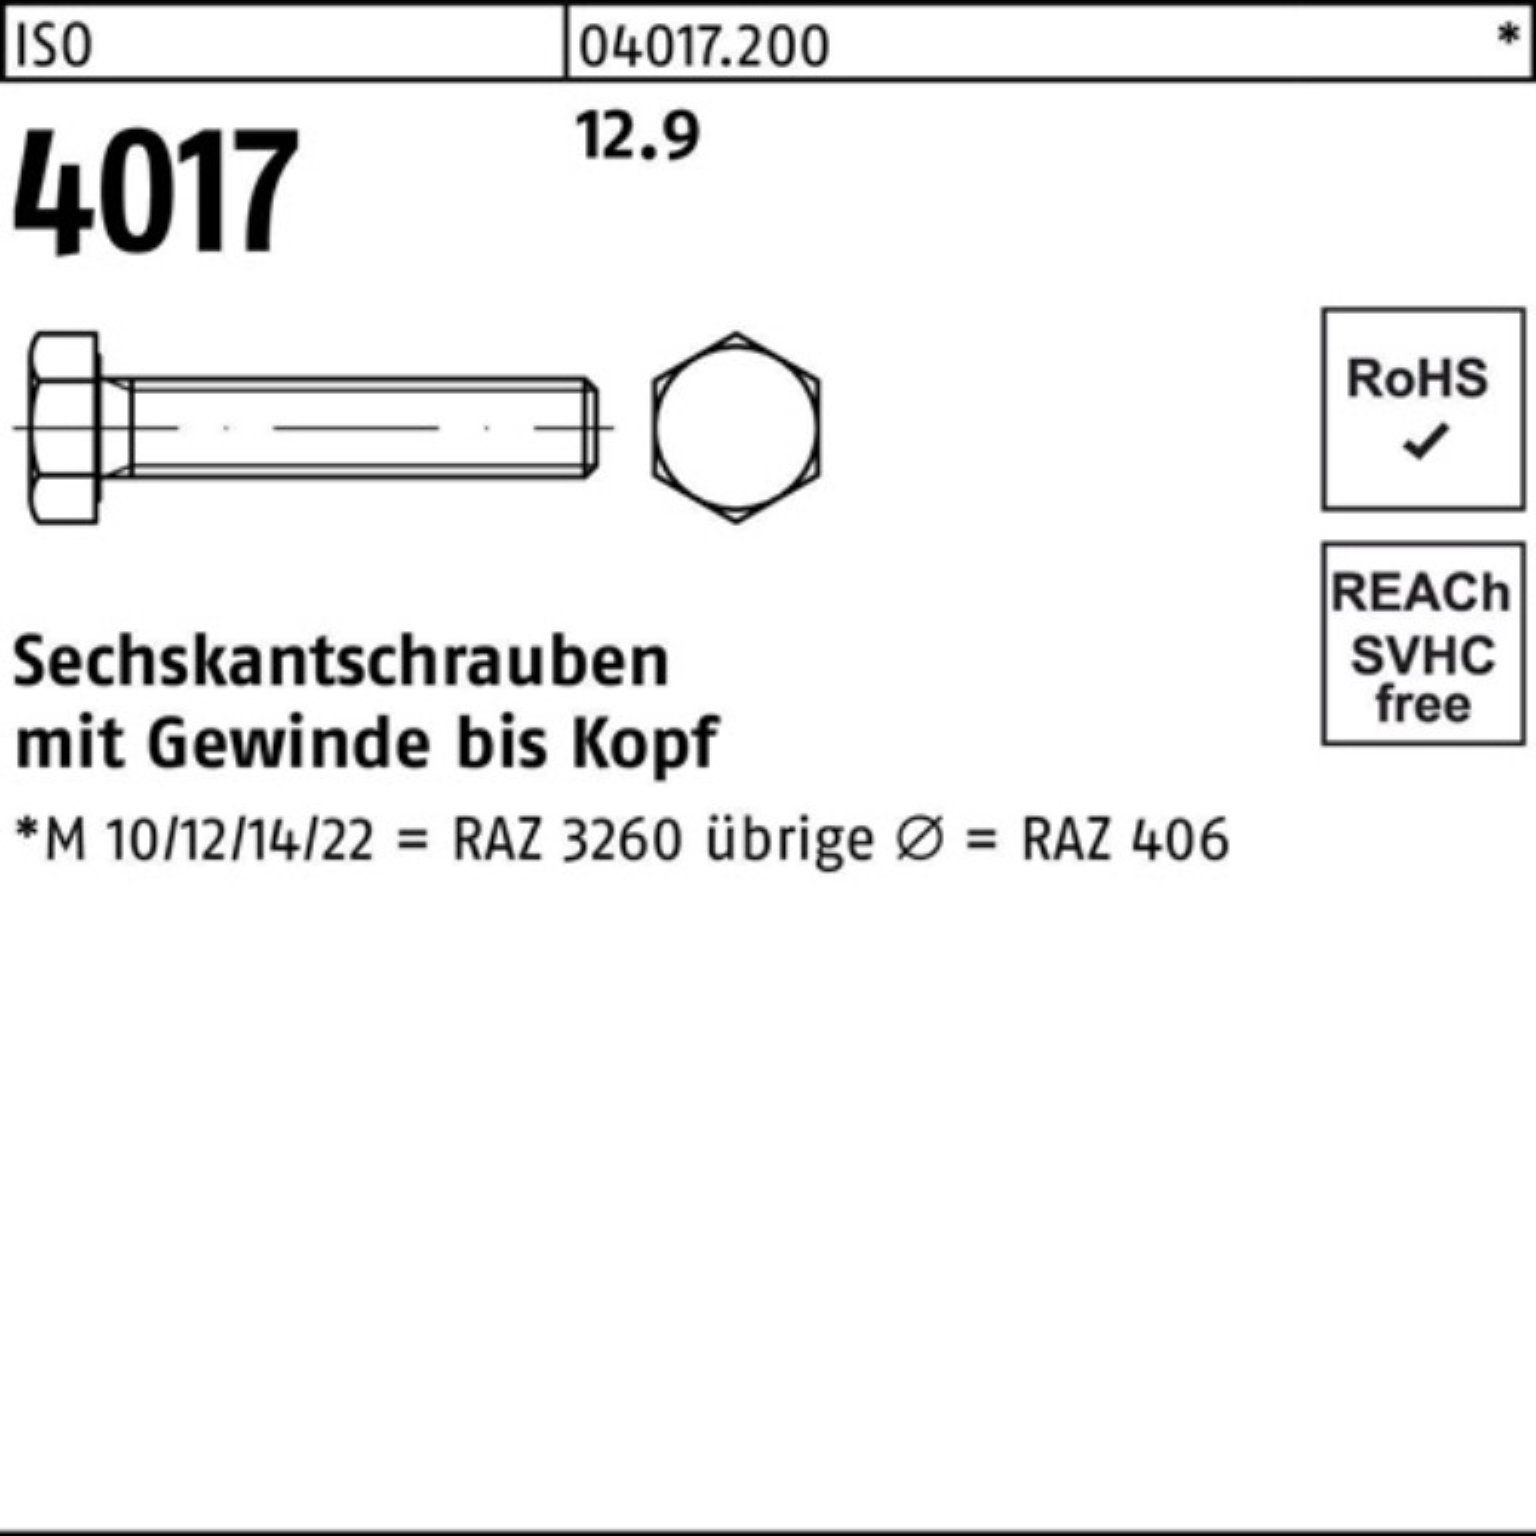 Sechskantschraube Bufab ISO 100 Pack 4 50 Stück ISO 12.9 4017 M10x Sechskantschraube VG 100er